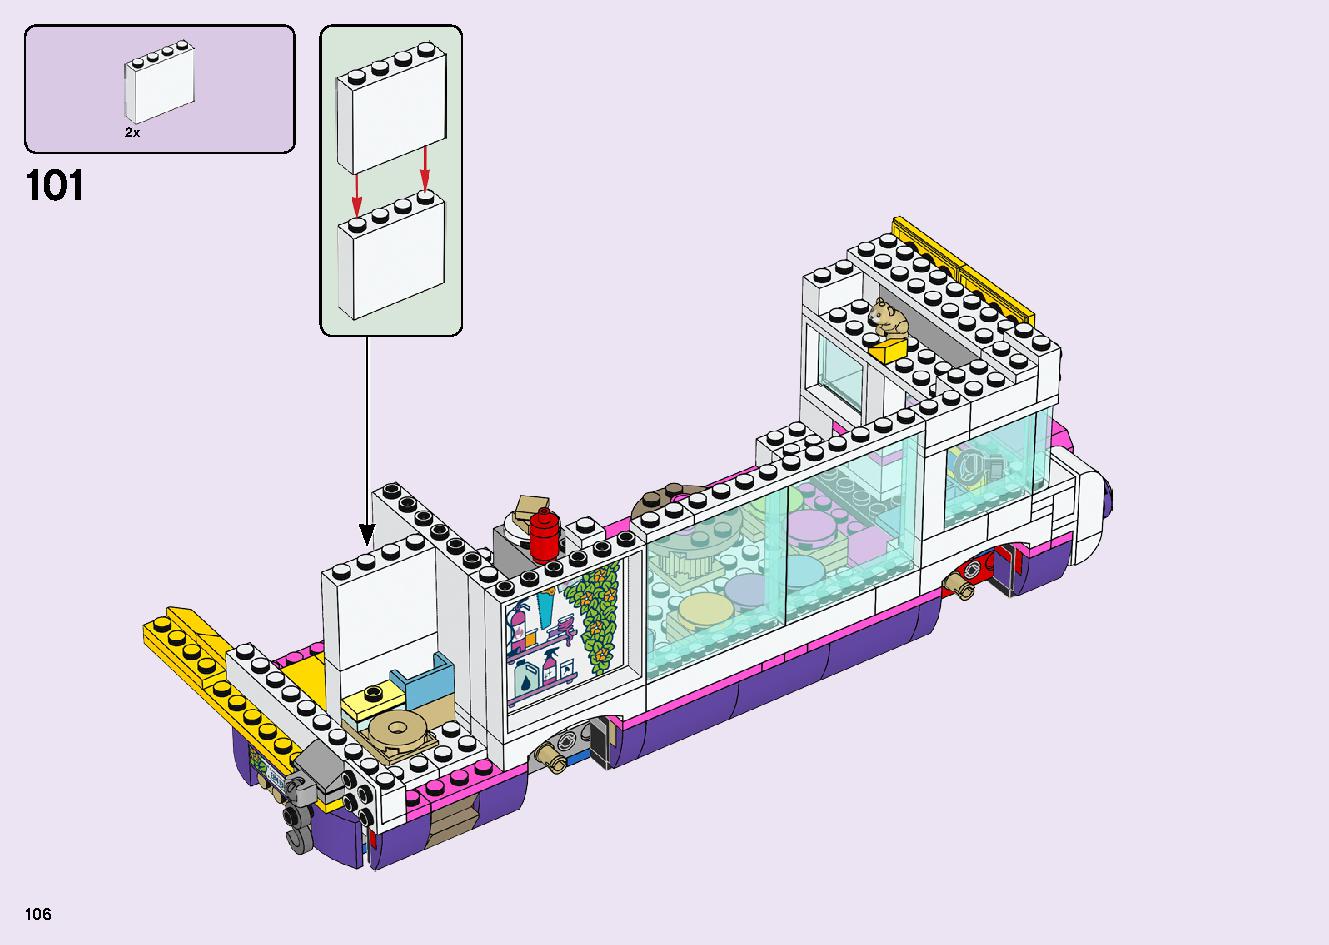 フレンズのうきうきハッピー・バス 41395 レゴの商品情報 レゴの説明書・組立方法 106 page